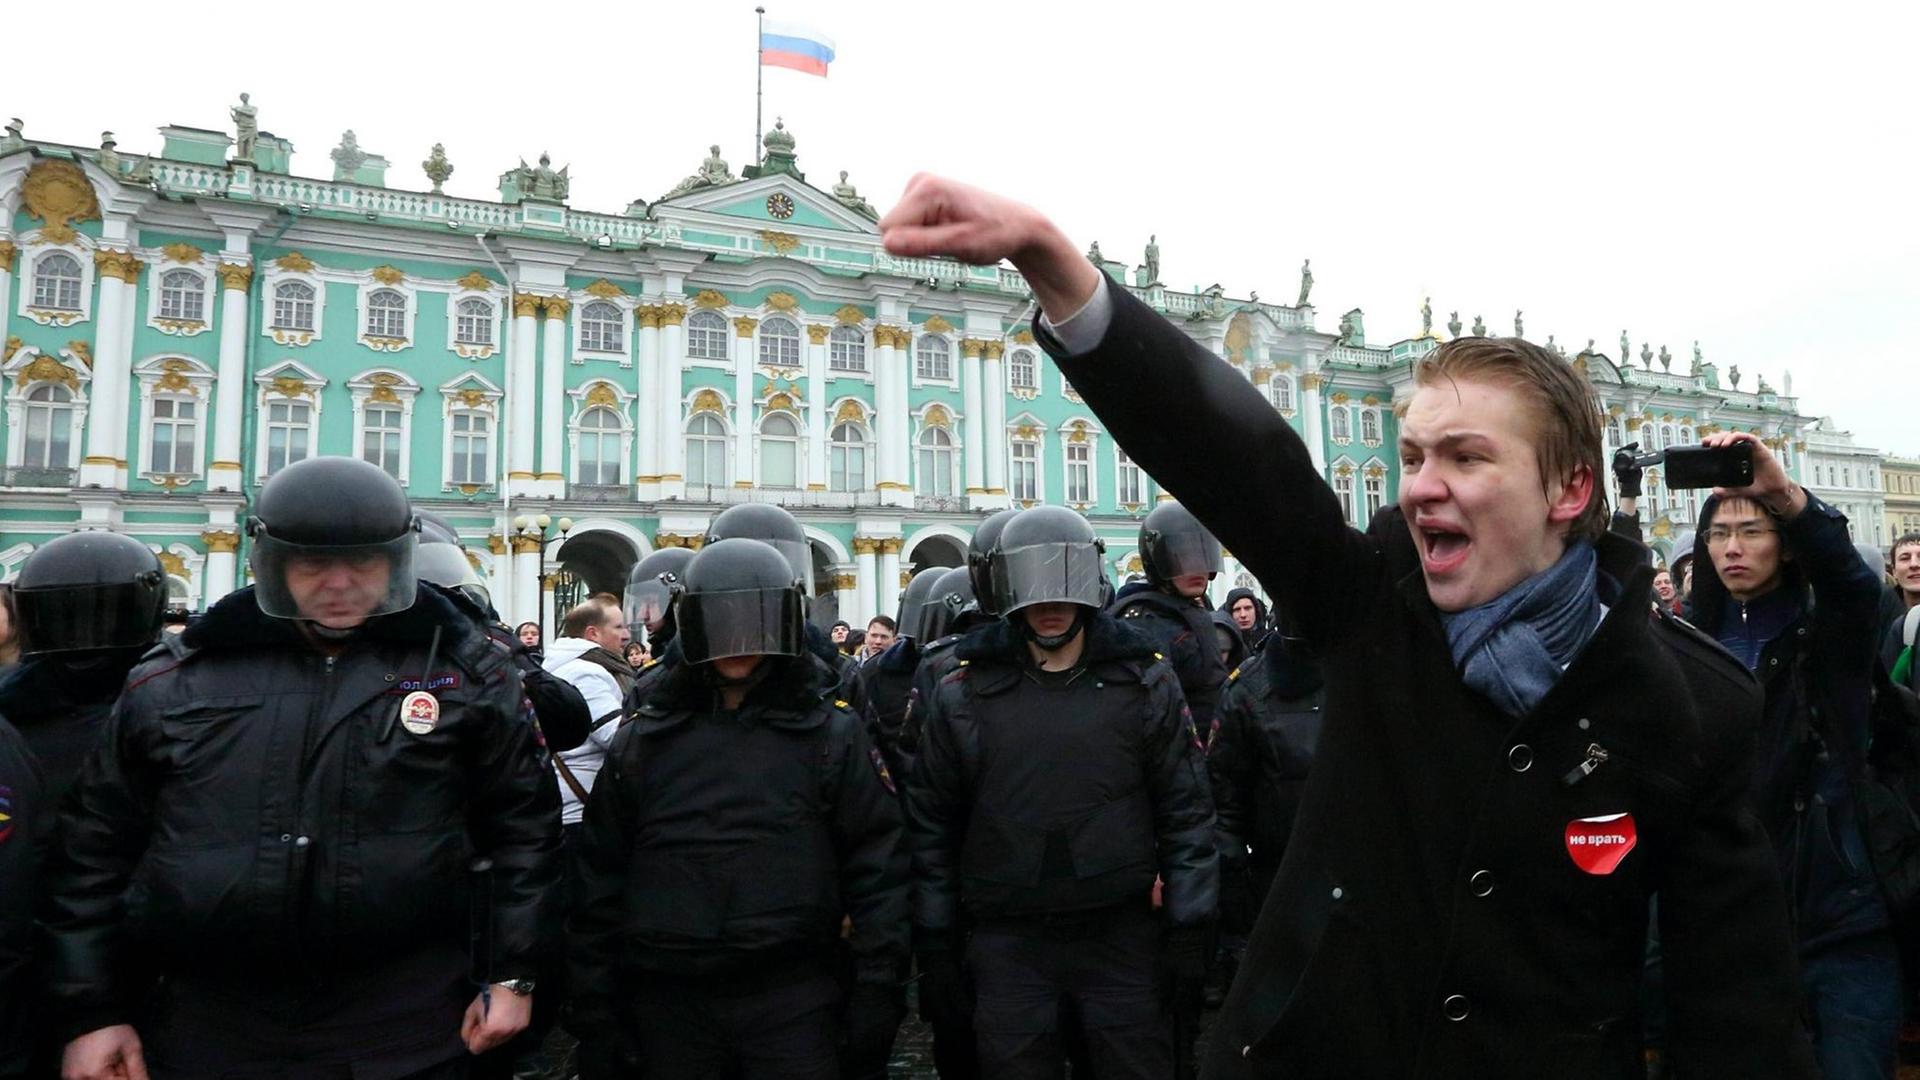 Am 26. März 2017 protestieren Demonstranten im russischen St. Petersburg gegen Korruption und für die Abdankung des russischen Premierministern Dimitri Medwedew